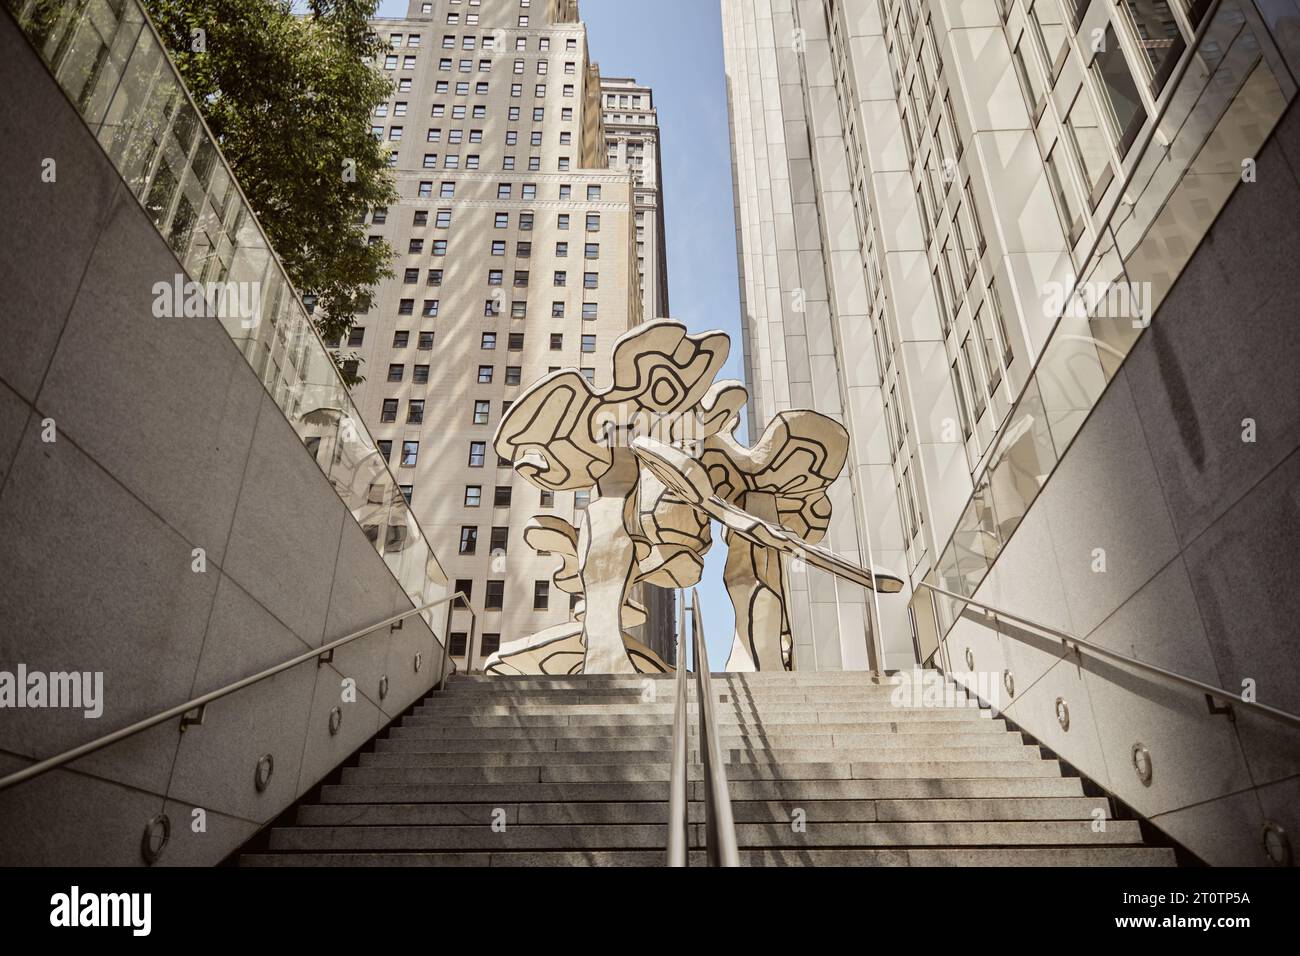 vista dall'angolo basso delle scale e delle installazioni artistiche contro edifici moderni, scena stradale di new york Foto Stock